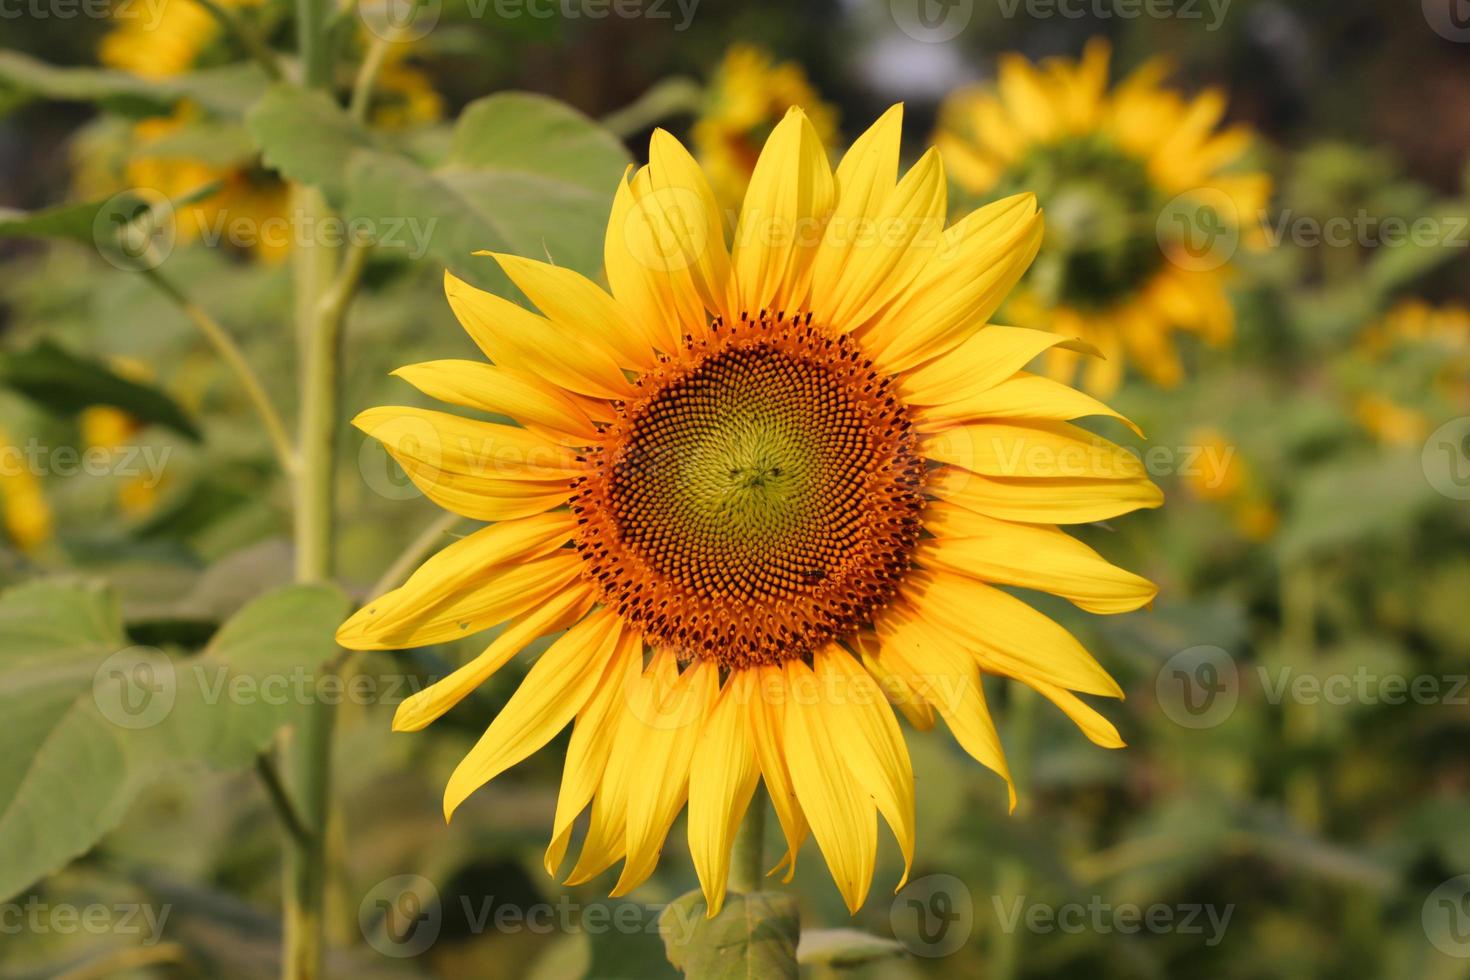 gelbe sonnenblume mit blättern nahaufnahmefoto. schöne sonnenblume an einem sonnigen tag. sonnenblume, die im sonnenschein-nahaufnahmefoto blüht. gelbe blume mit grünen blättern und mit einem natürlichen hintergrund. foto